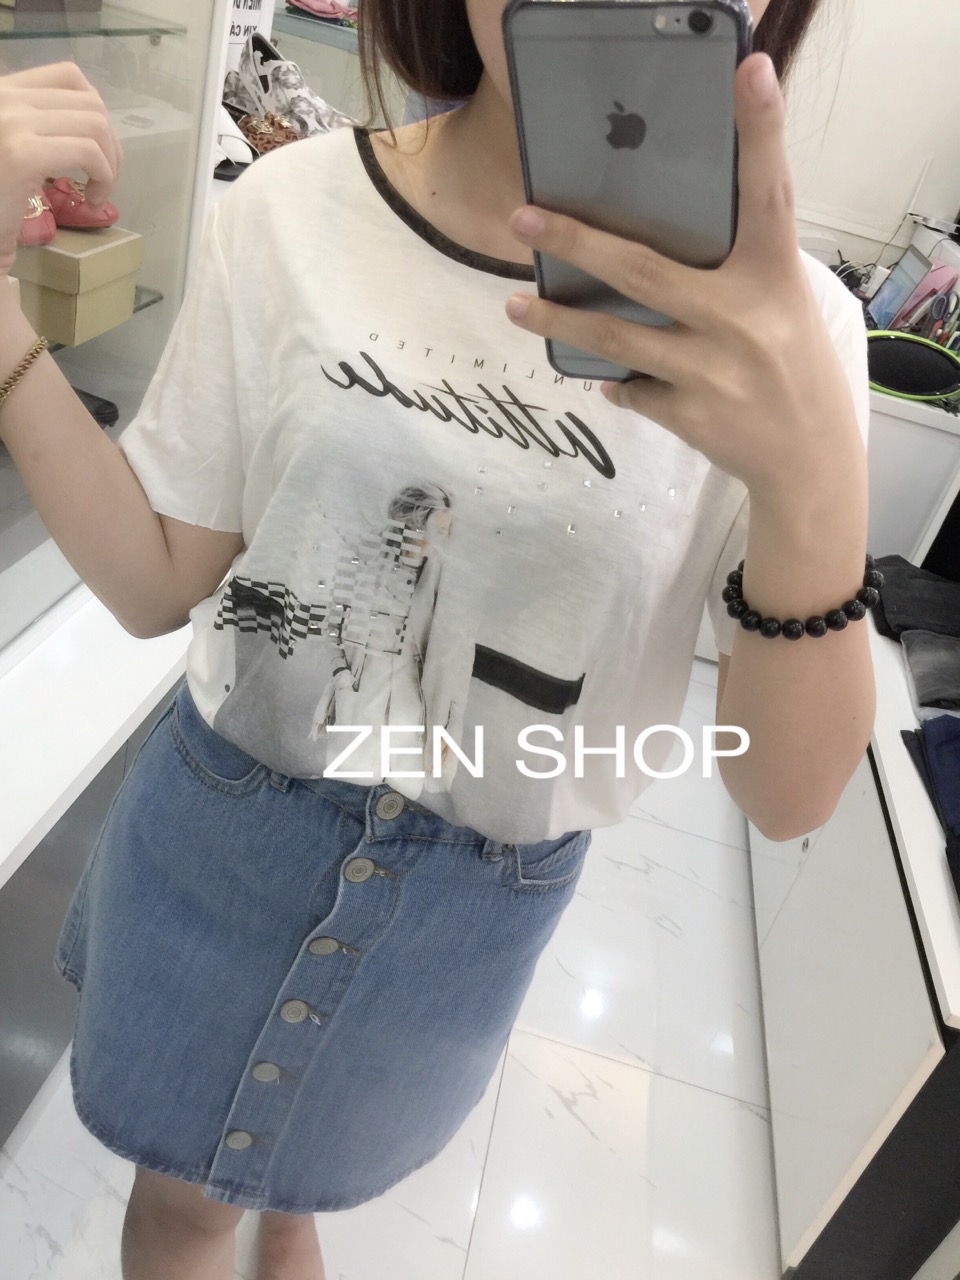 Zen Shop chuyen cac mat hang thoi trang chinh hang